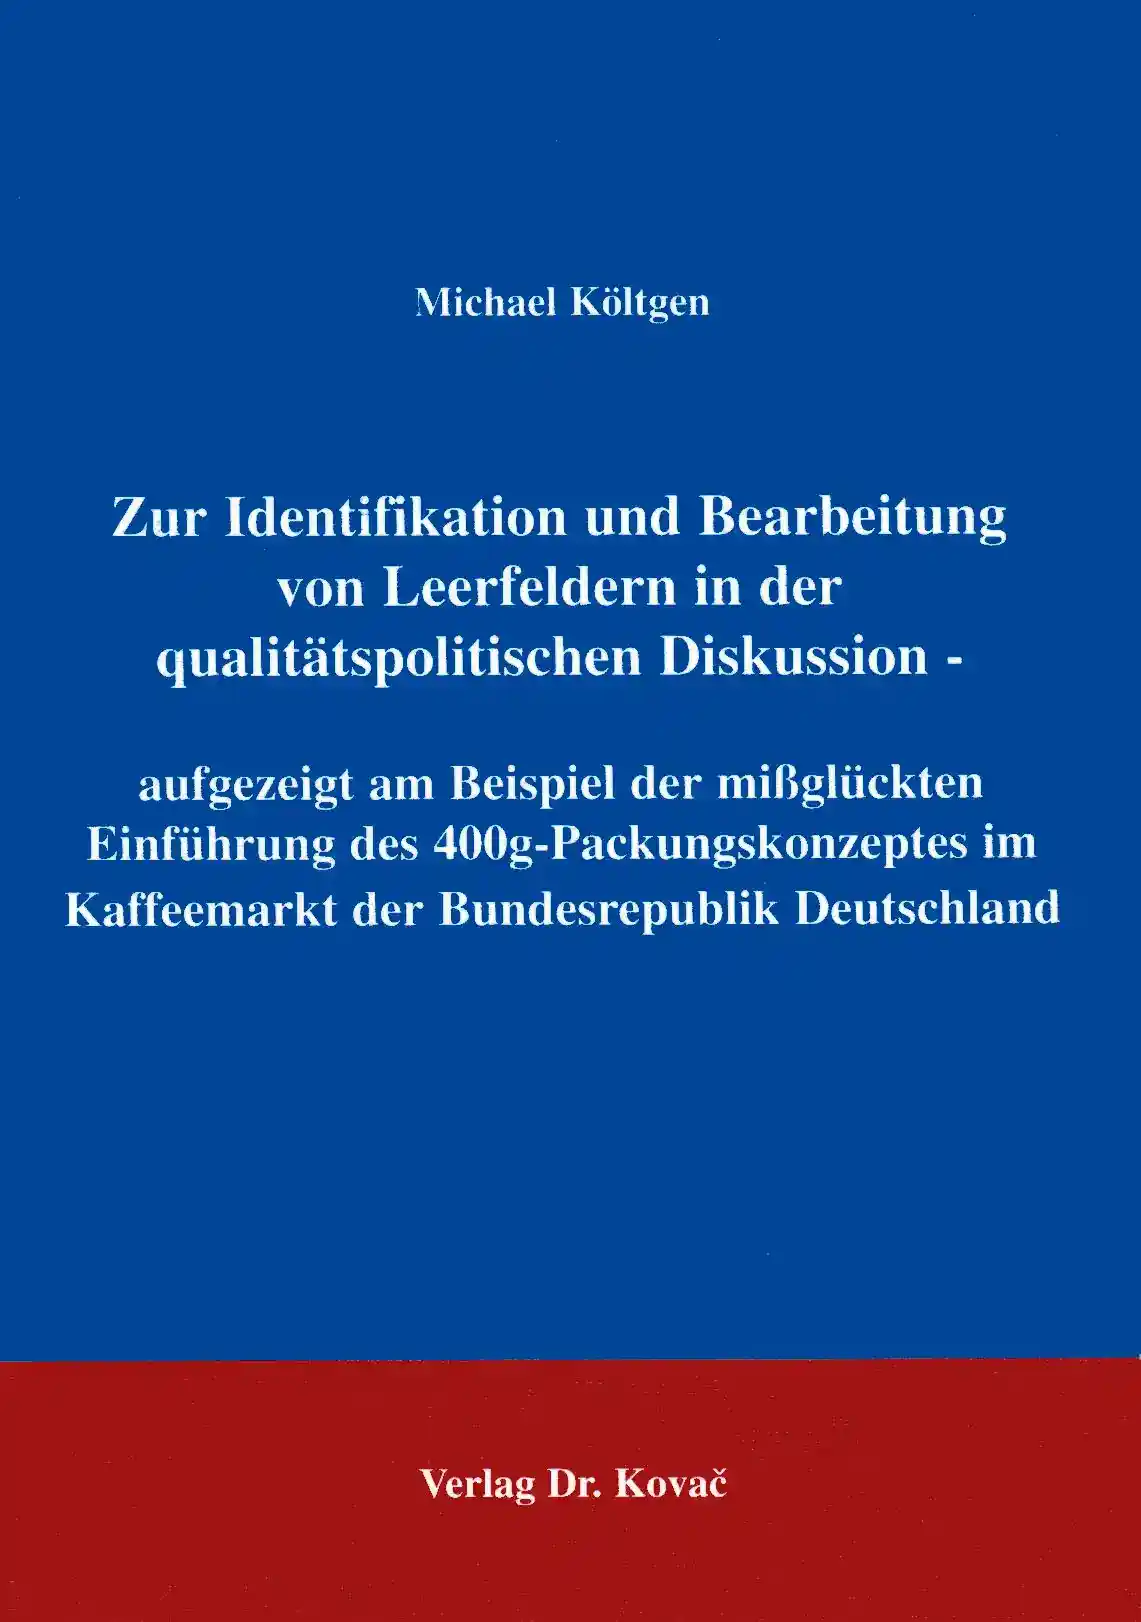 Zur Identifikation und Bearbeitung von Leerfeldern in der qualitätspolitischen Diskussion (Forschungsarbeit)